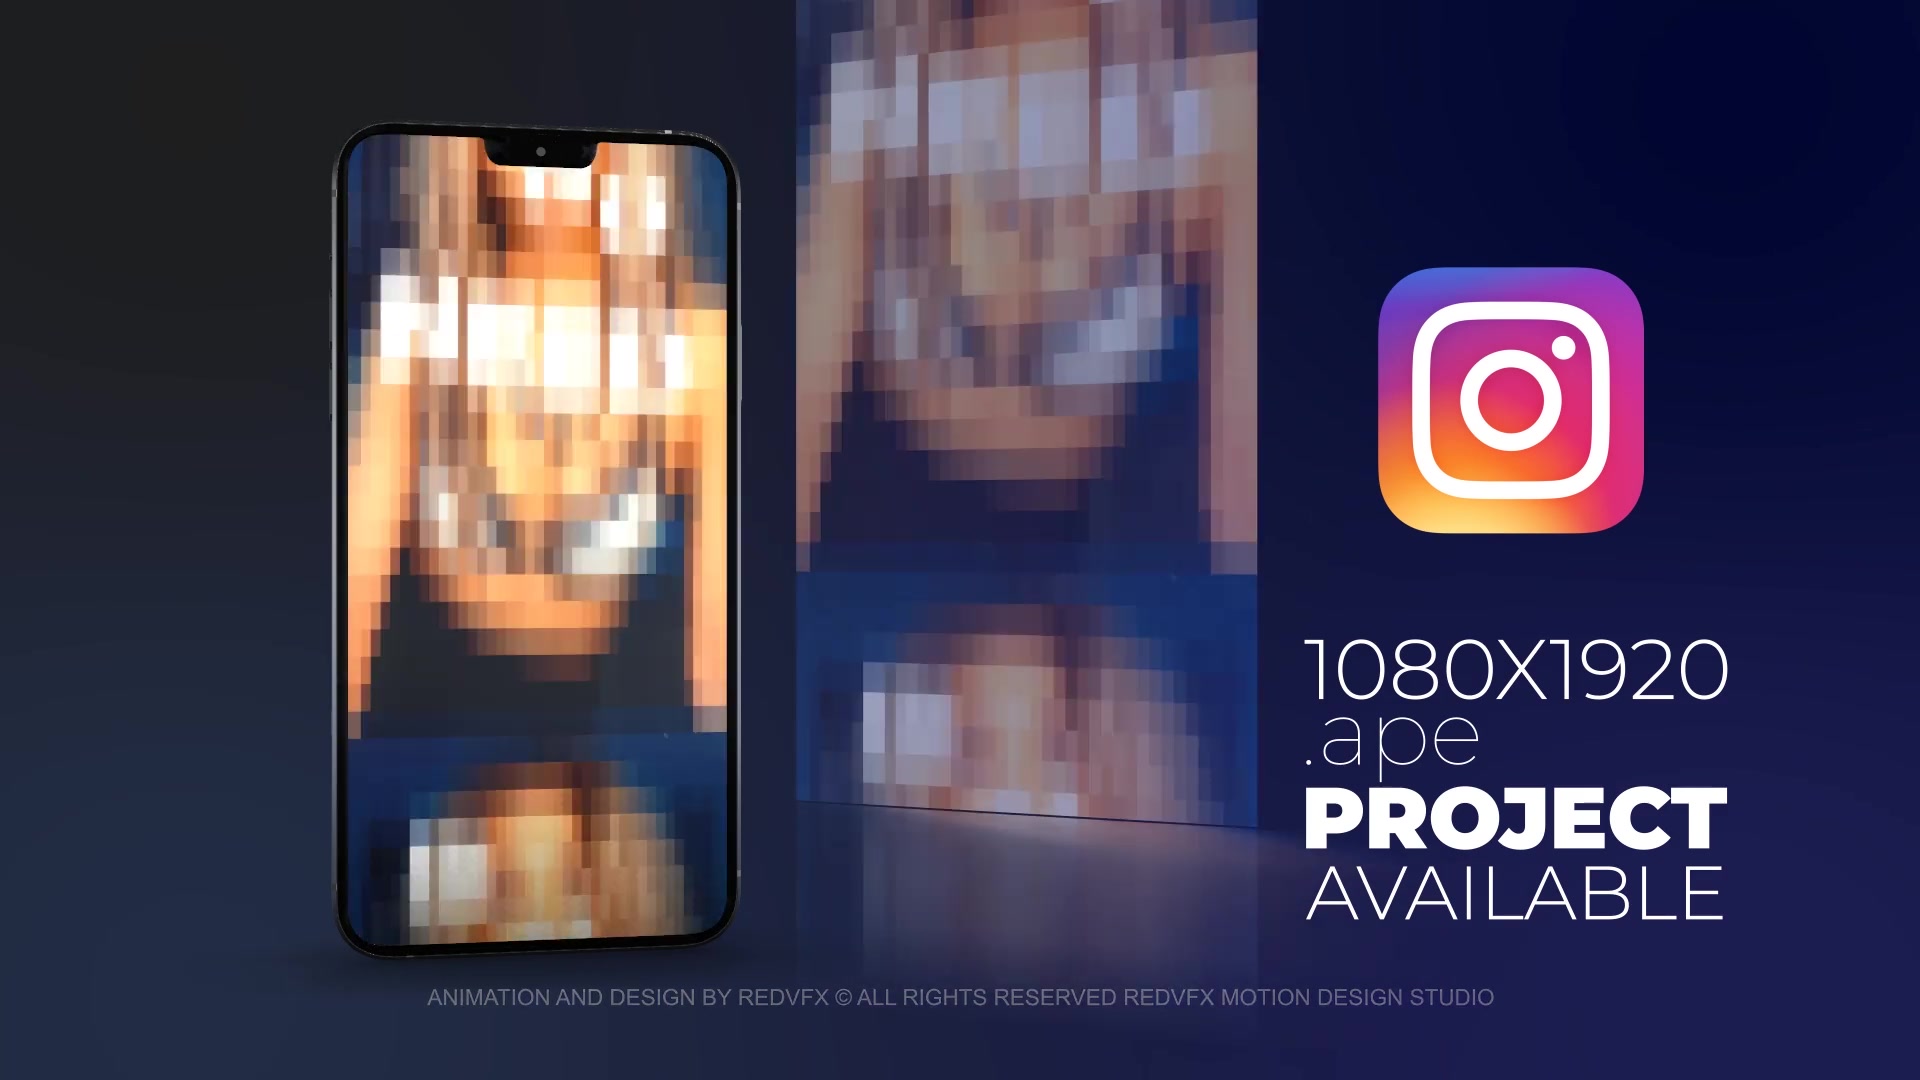 Future Bass Promo for Premiere Pro Videohive 36649506 Premiere Pro Image 9